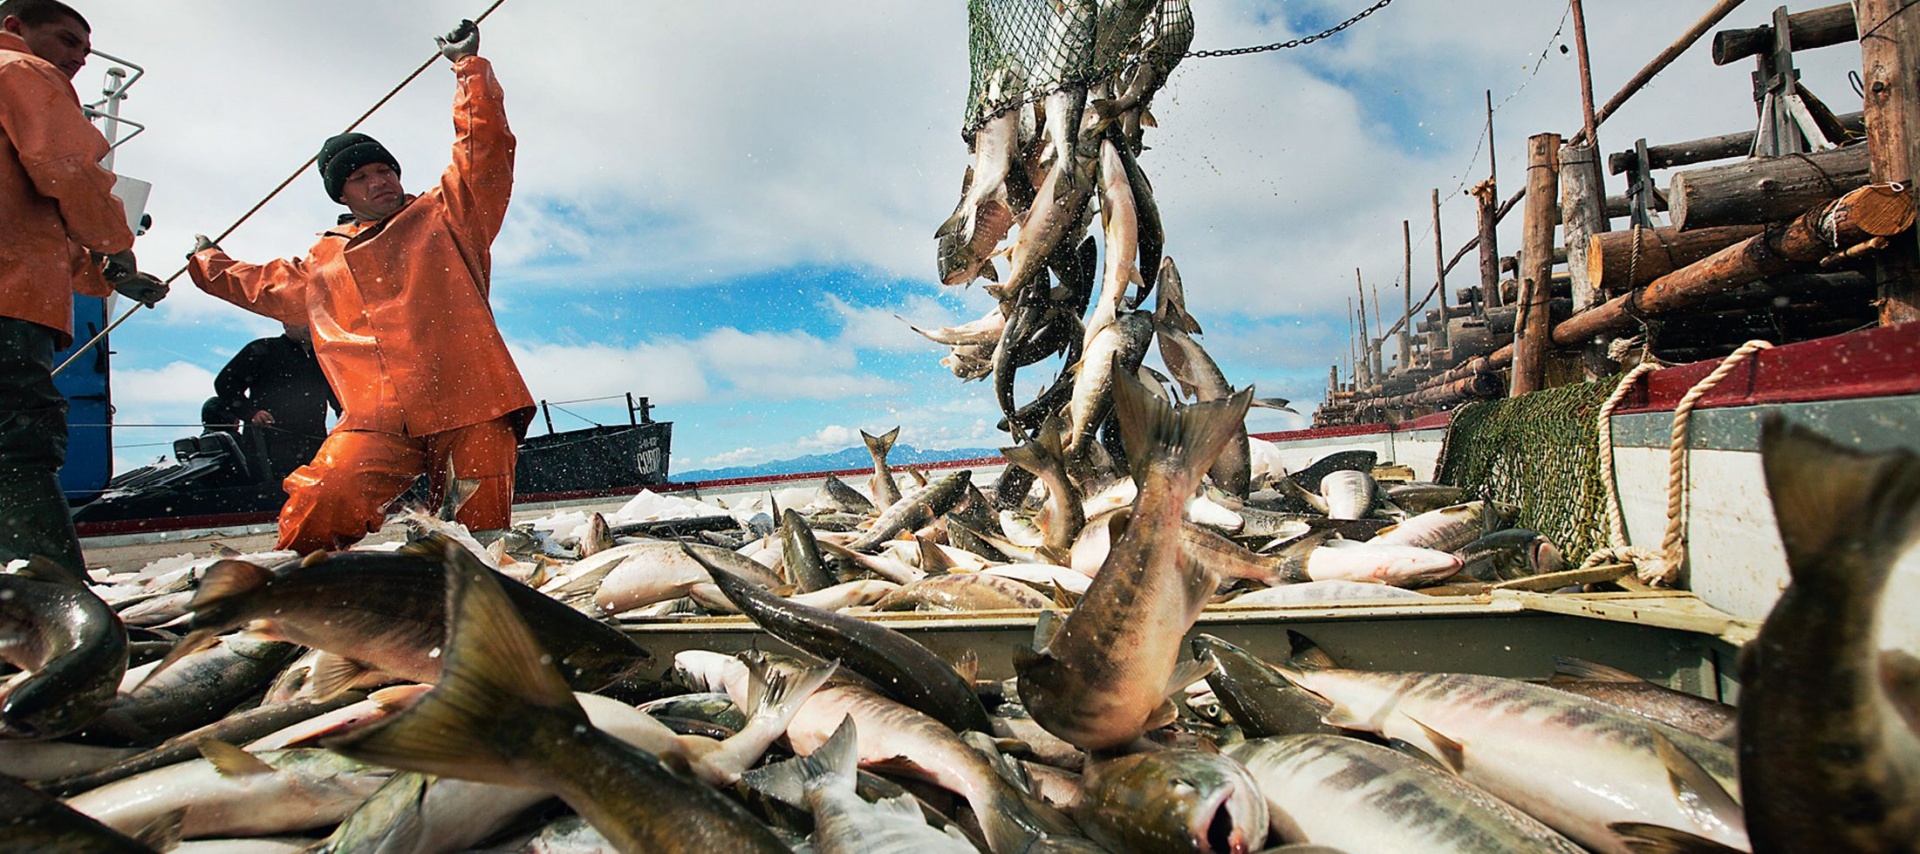 Илья Шестаков: «Изменения в законе о рыболовстве позволят нарастить объем поставок рыбной продукции на российский берег»